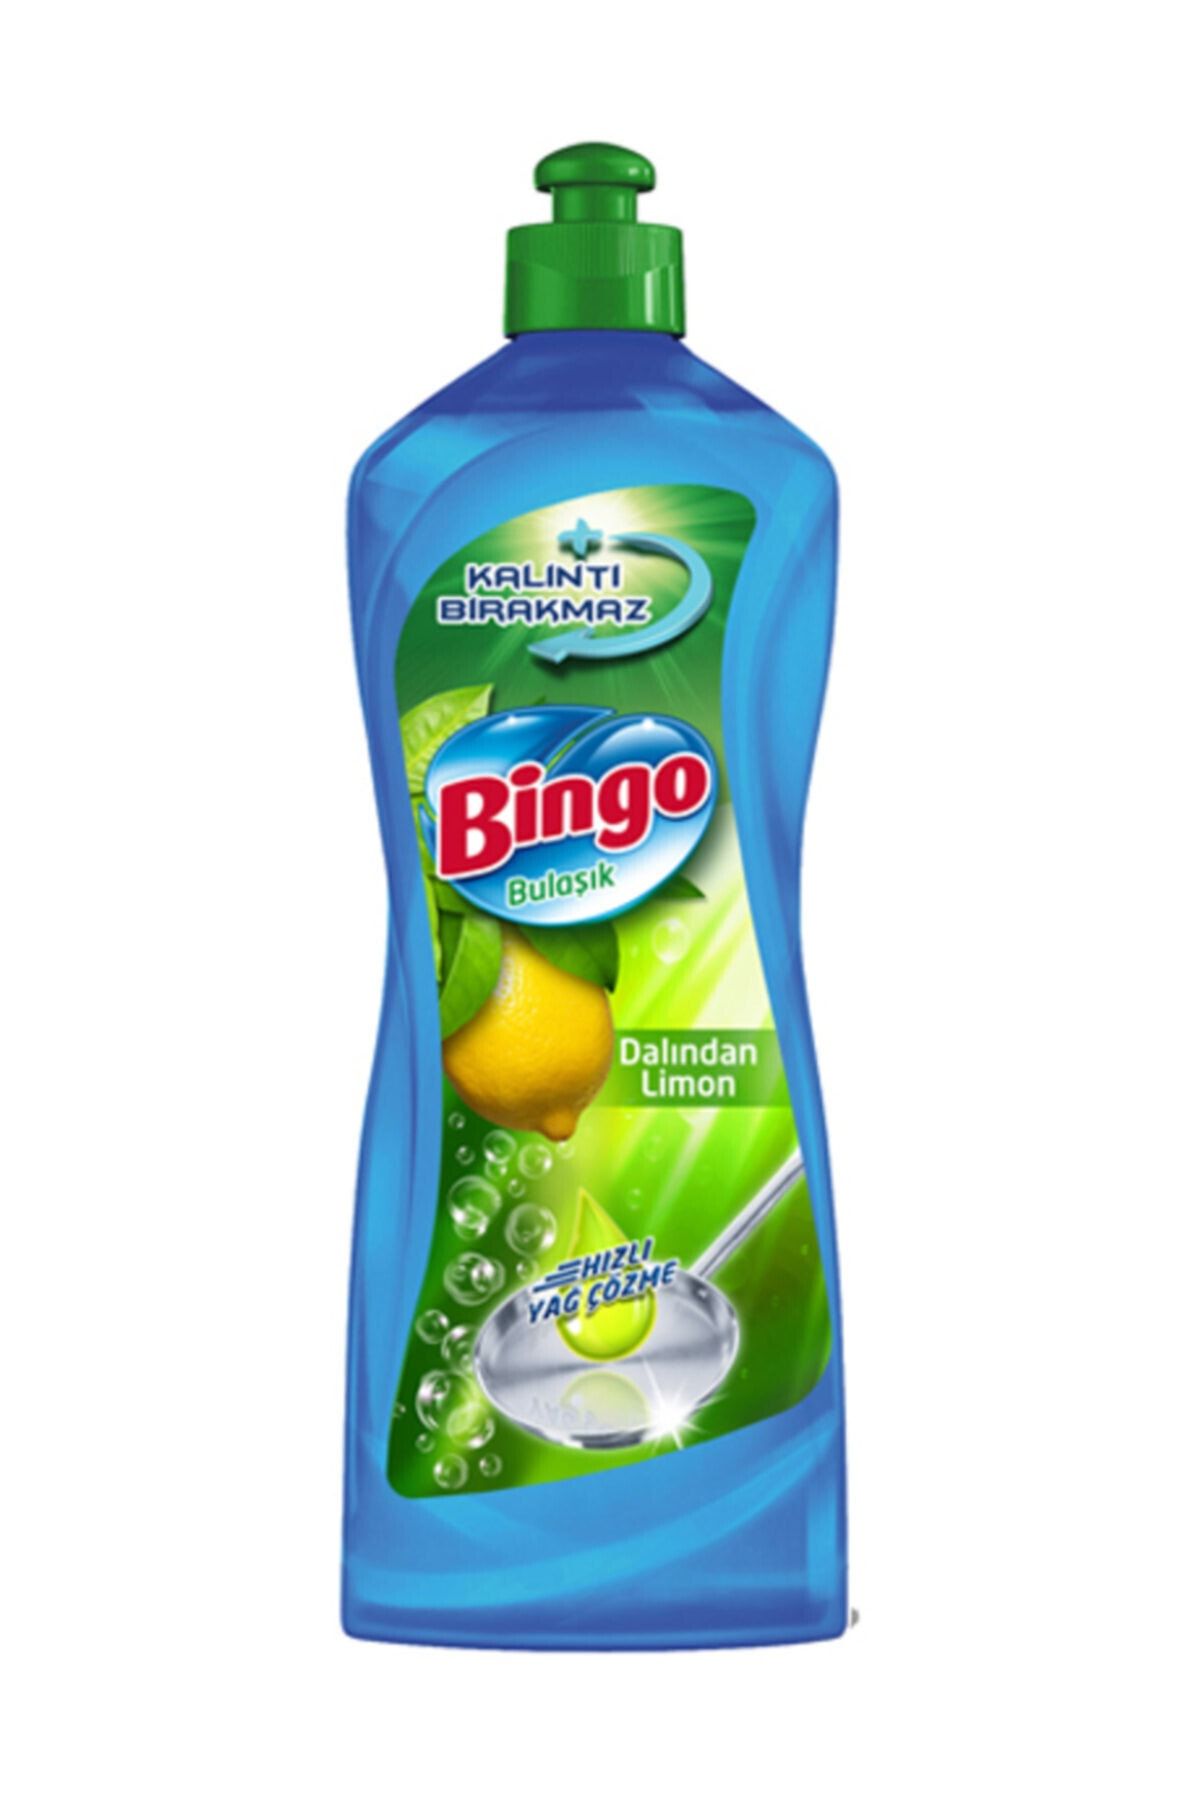 Bingo Sıvı Bulaşık Detarjanı 675 G Dalından Limon